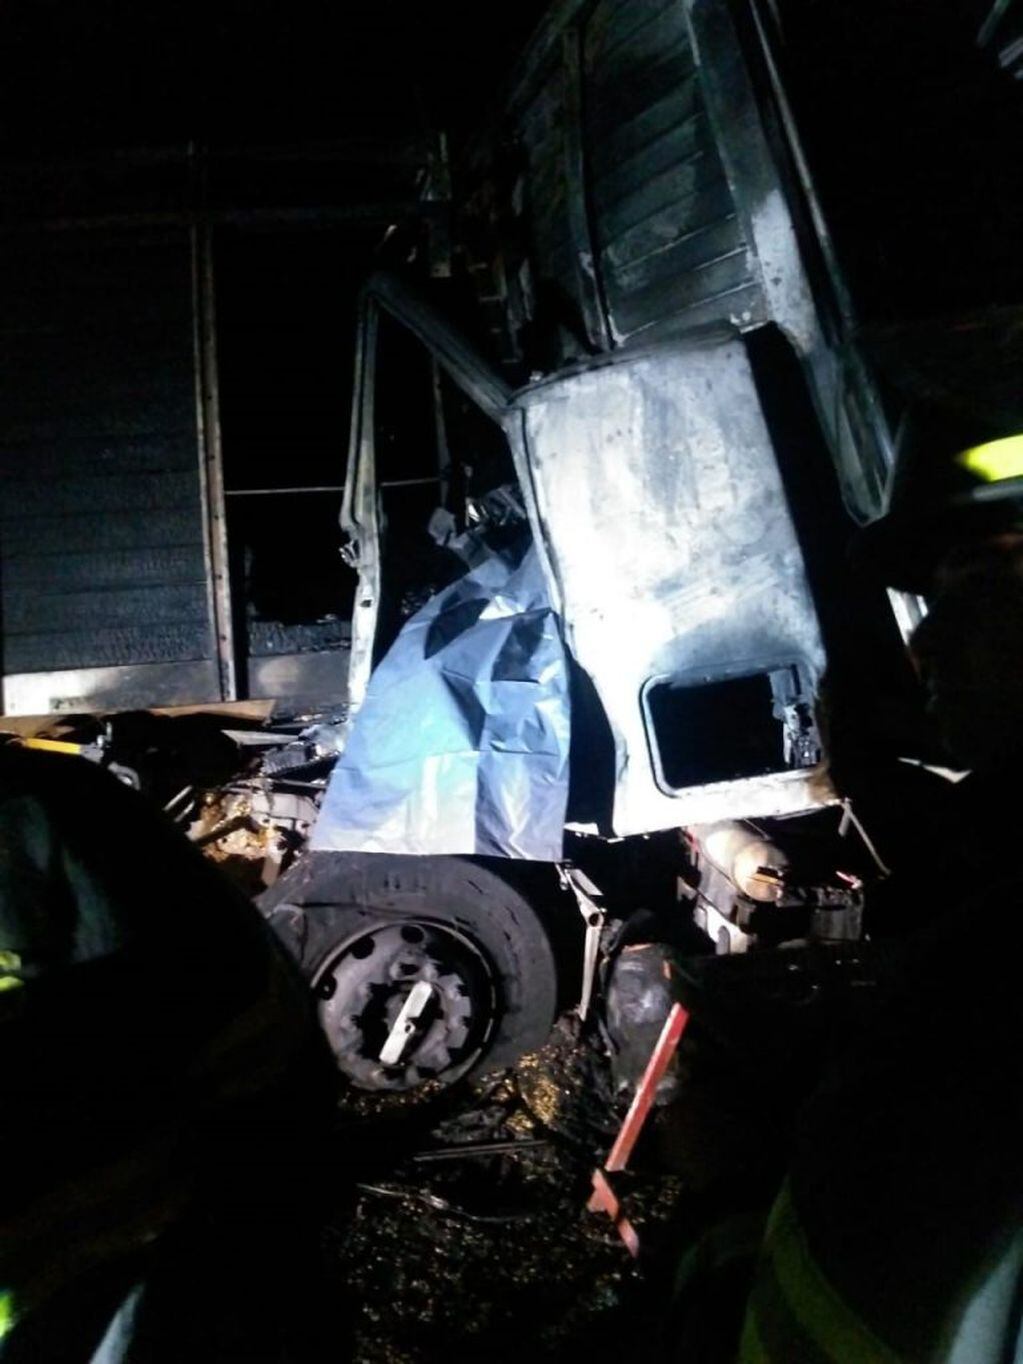 La cabina del camión Iveco se incendio y su chofer murió. (Min. Seguridad)